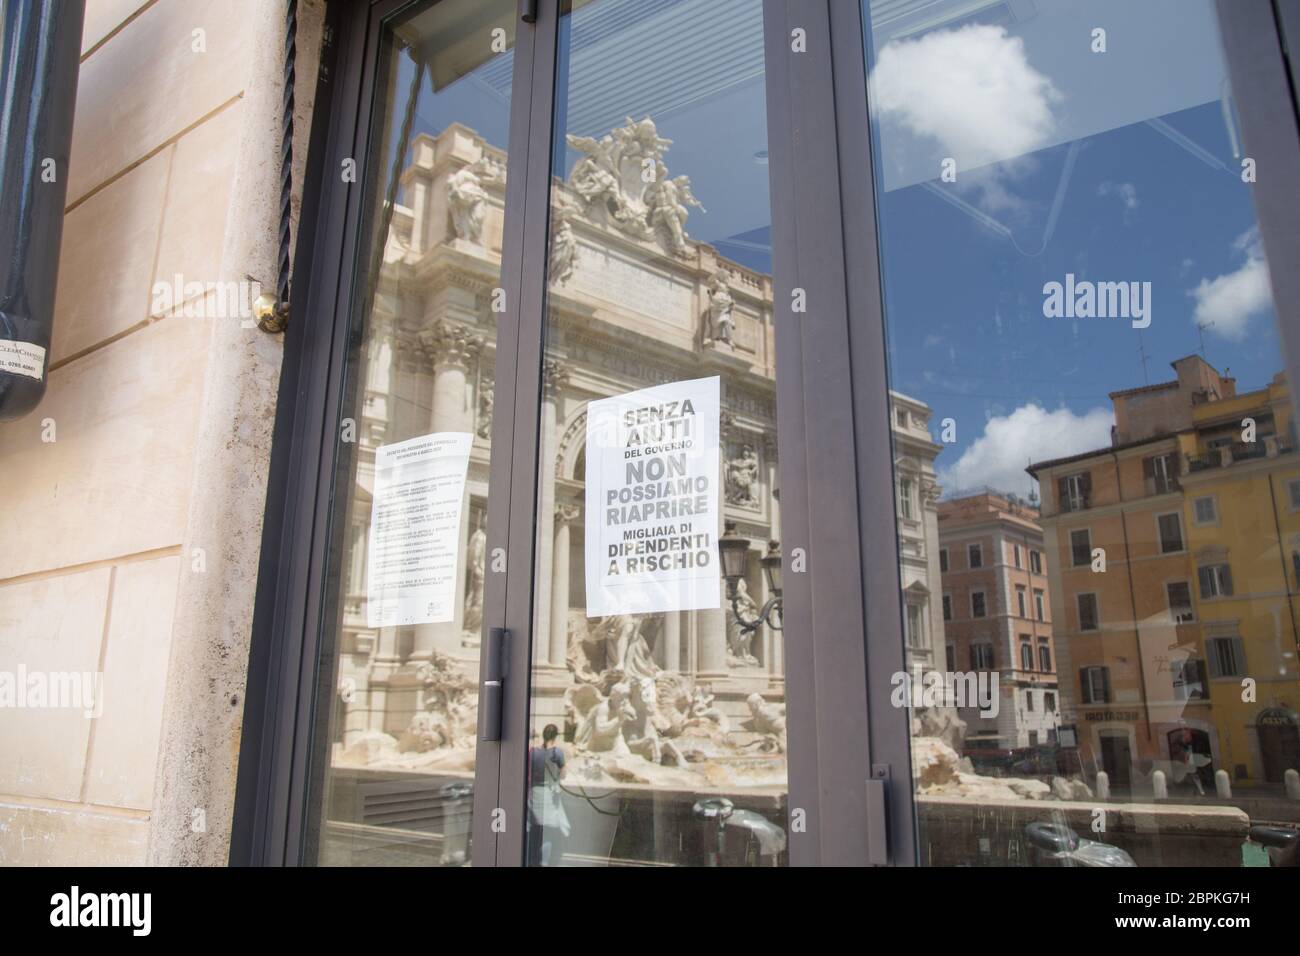 Roma, Italie. 19 mai 2020. Magasin fermé près de la fontaine de Trevi à Rome (photo par Matteo Nardone/Pacific Press) crédit: Pacific Press Agency/Alamy Live News Banque D'Images